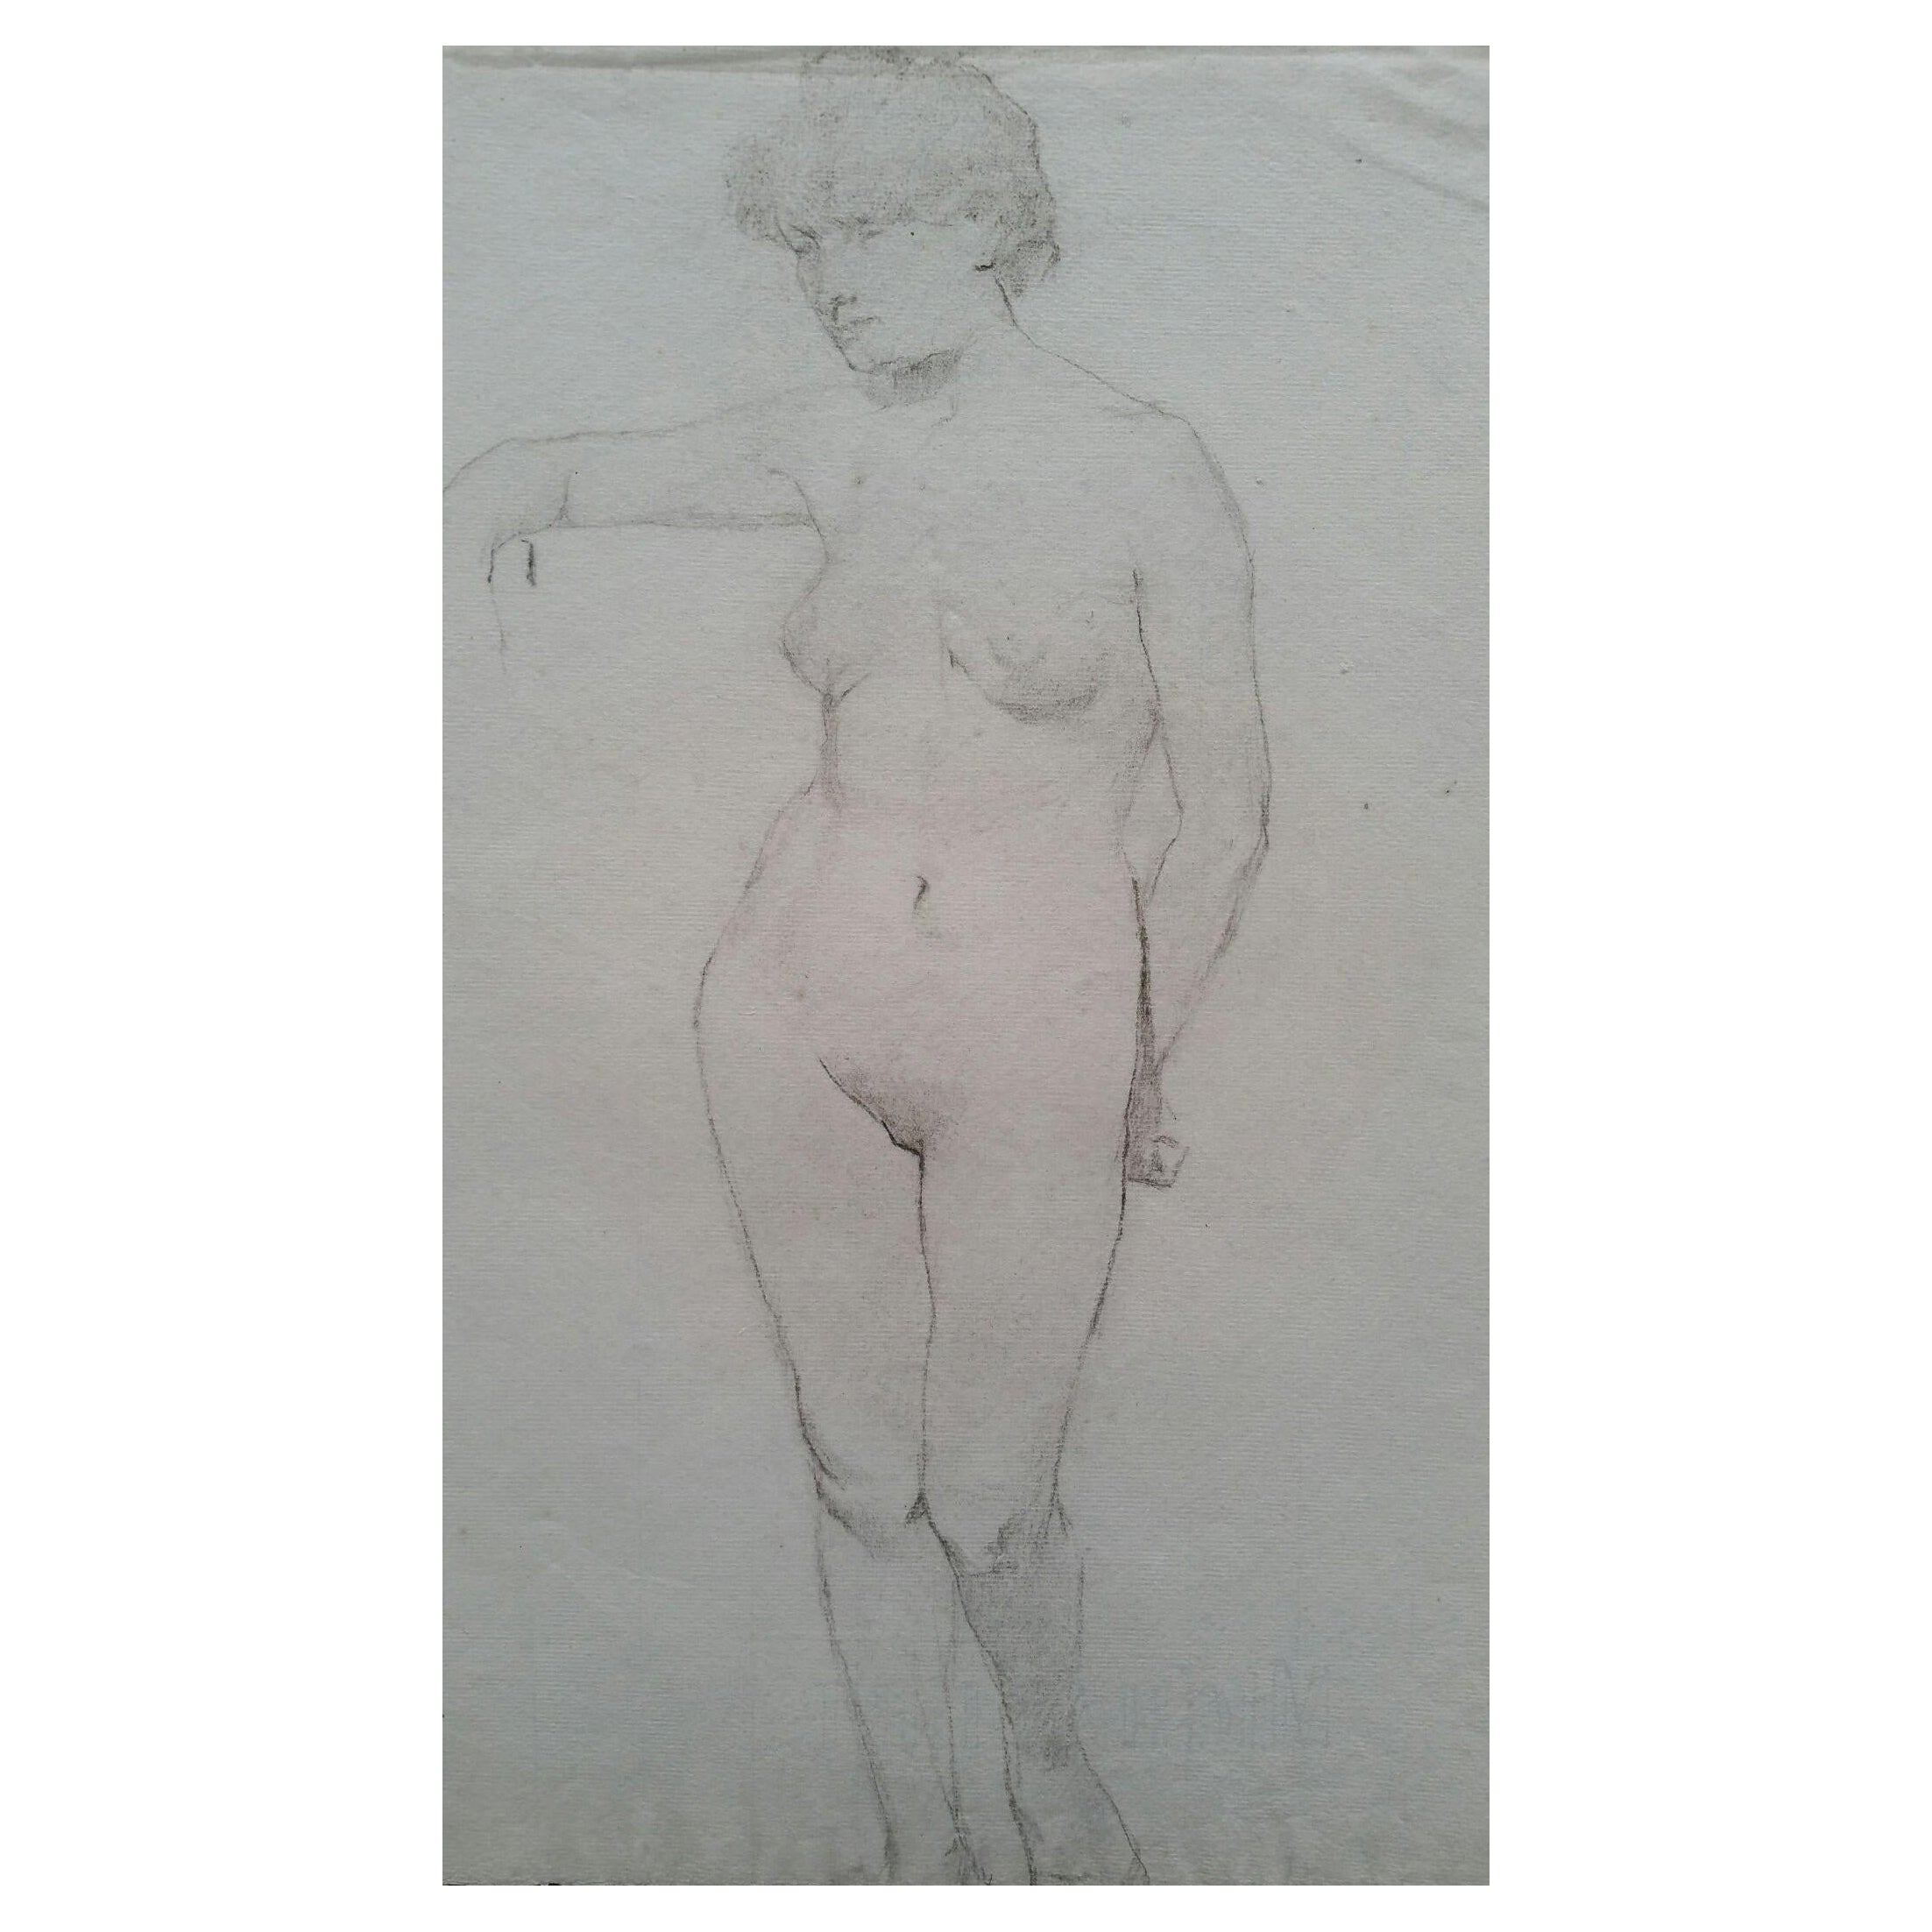 Portrait en graphite anglais d'une femme nue, debout, tournée vers l'avant